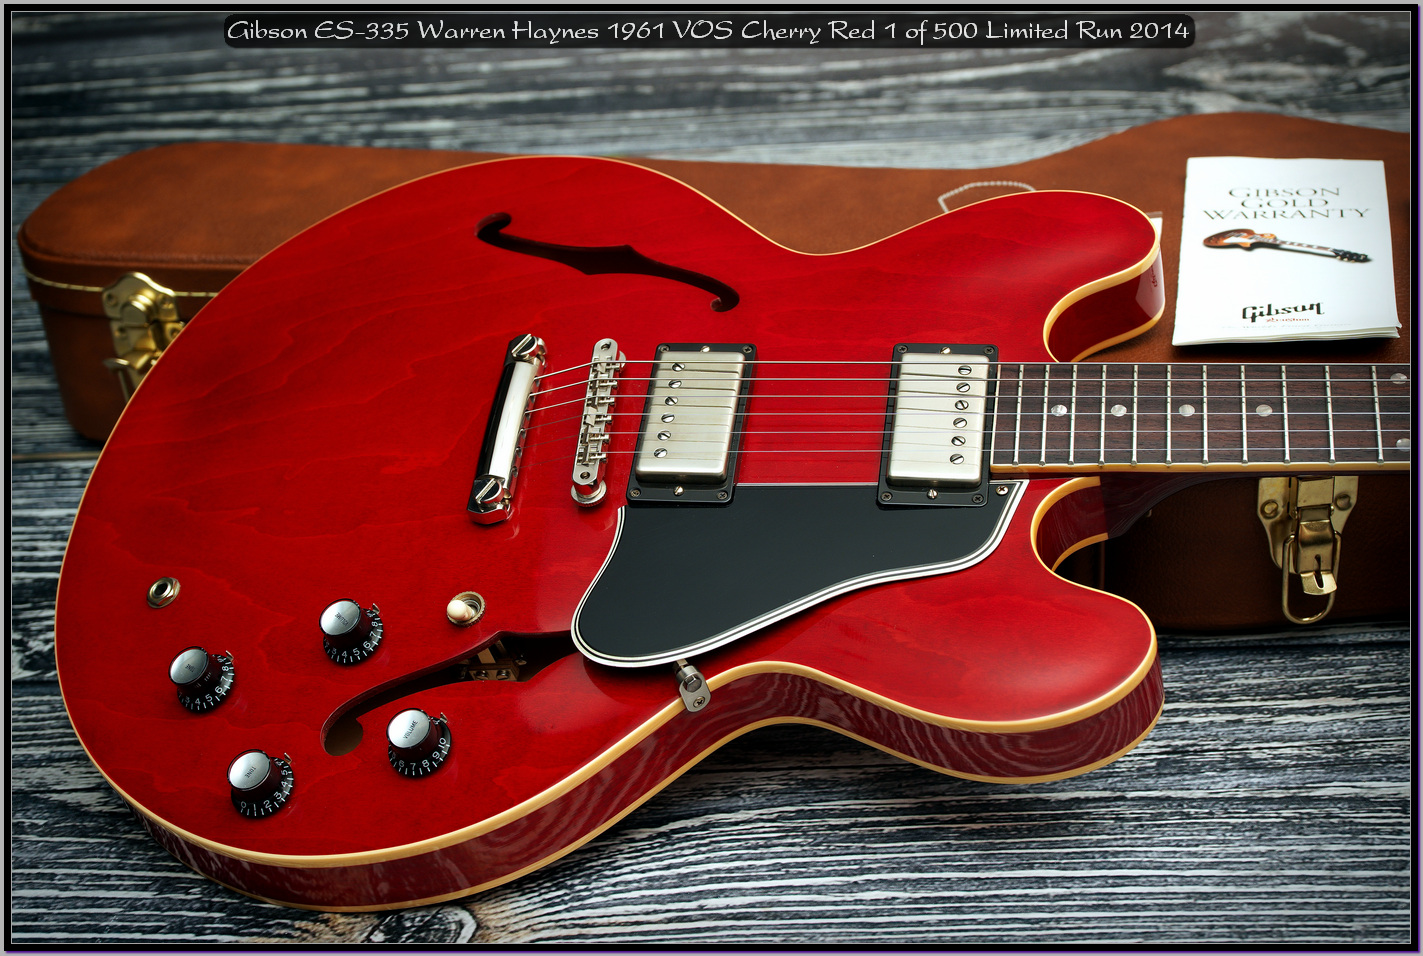 Gibson ES-335 Warren Haynes 1961 VOS Cherry Red 1 of 500 Limited Run 2014 05_x1440.jpg